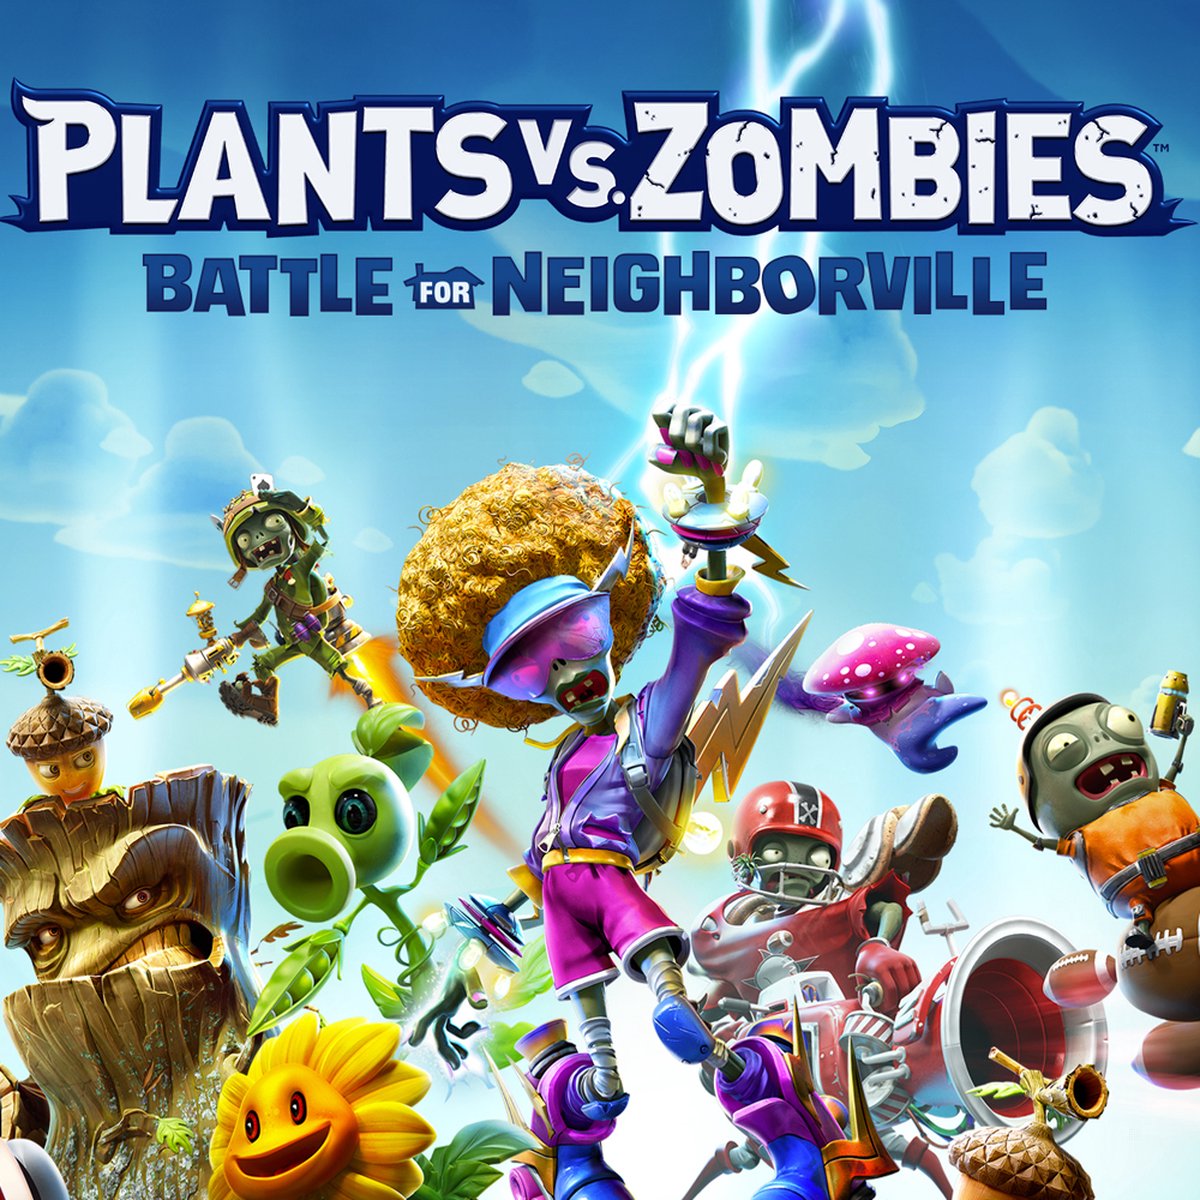 Plant vs zombie battle for neighborville